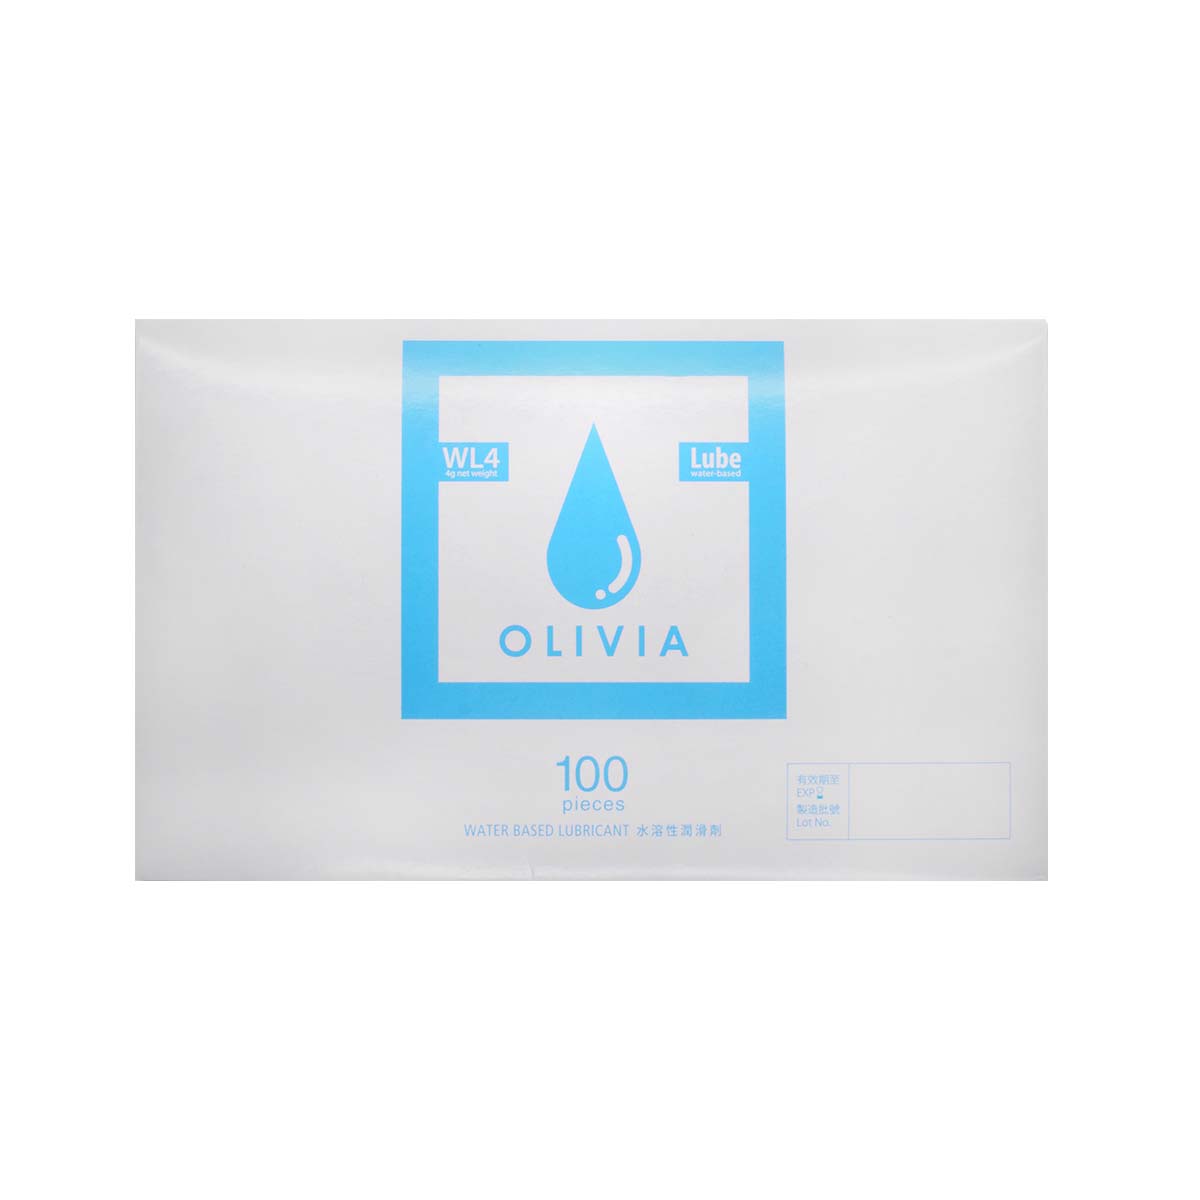 オリヴィア WL4 小袋 100 個入 水性潤滑ゼリー-p_2